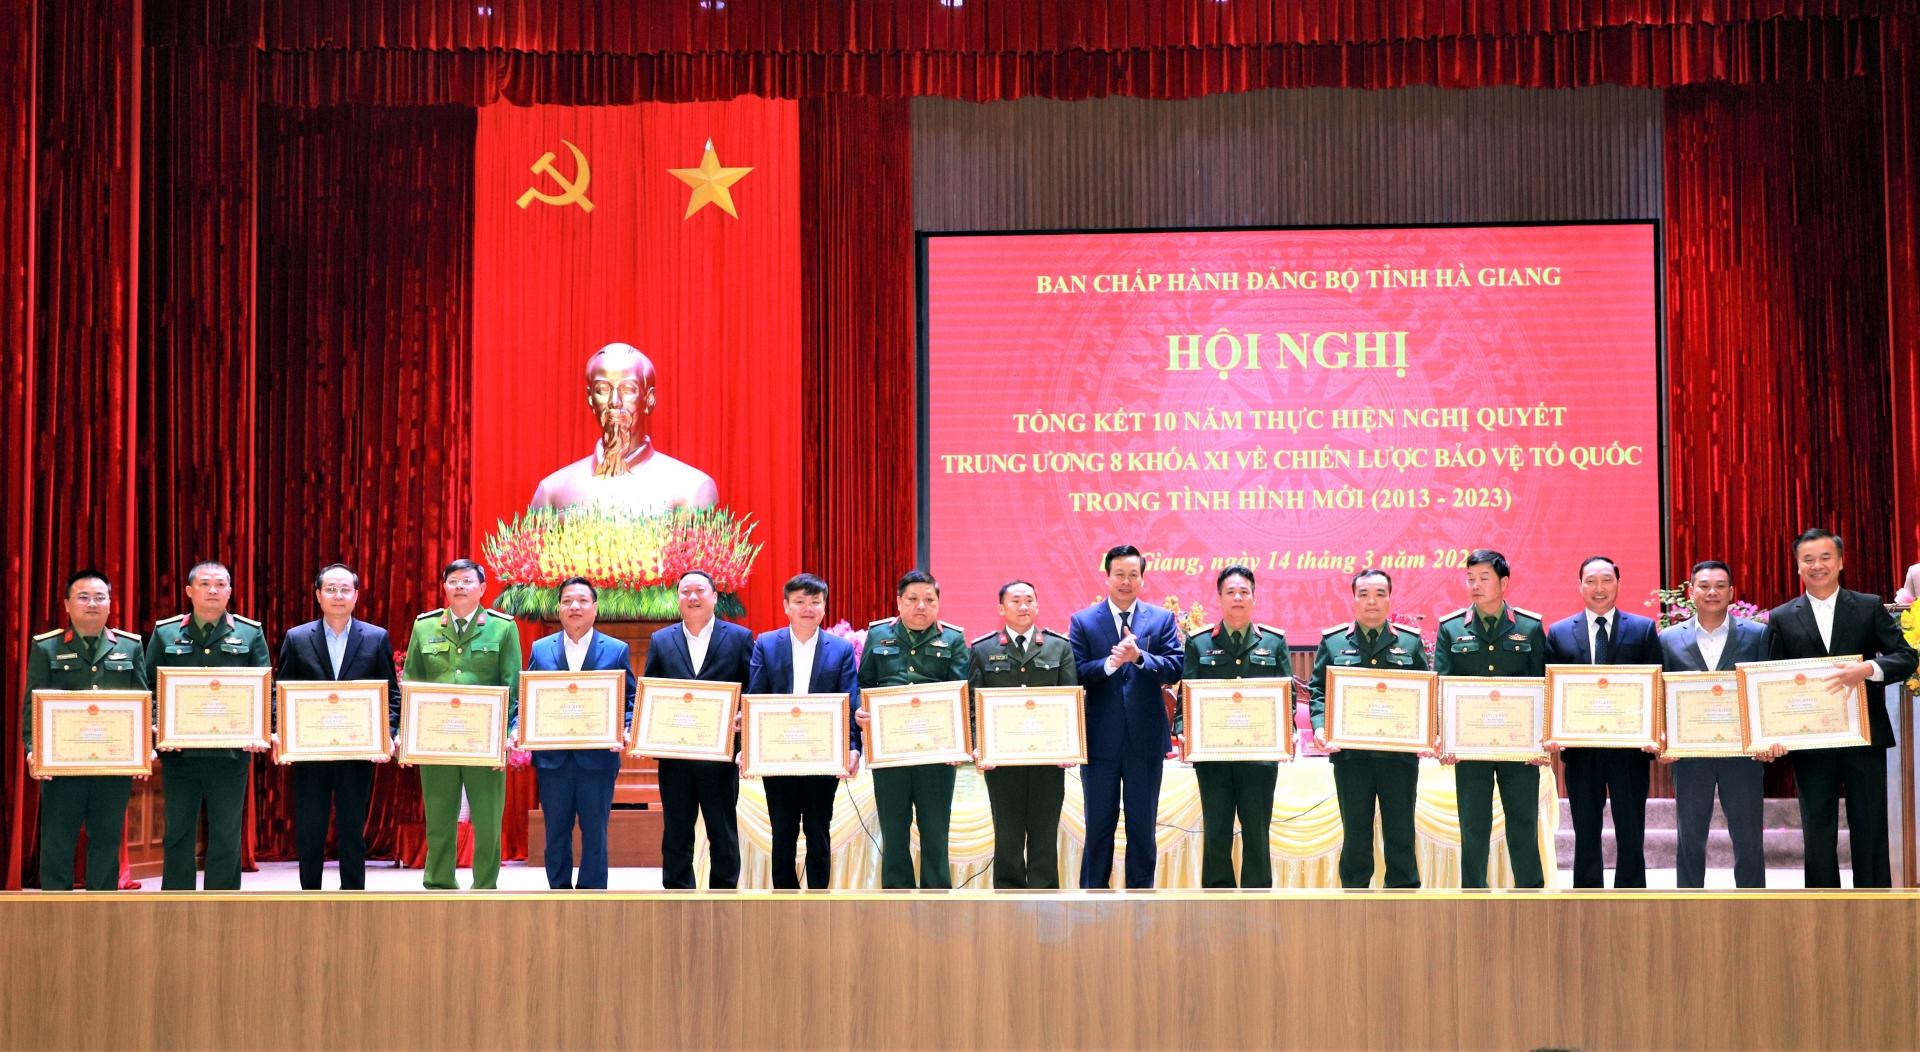 Phó Bí thư Tỉnh ủy, Chủ tịch UBND tỉnh Nguyễn Văn Sơn trao Bằng khen cho các cá nhân có thành tích xuất sắc trong 10 năm thực hiện Nghị quyết Trung ương 8, khóa XI về Chiến lược bảo vệ Tổ quốc trong tình hình mới (2013 - 2023).